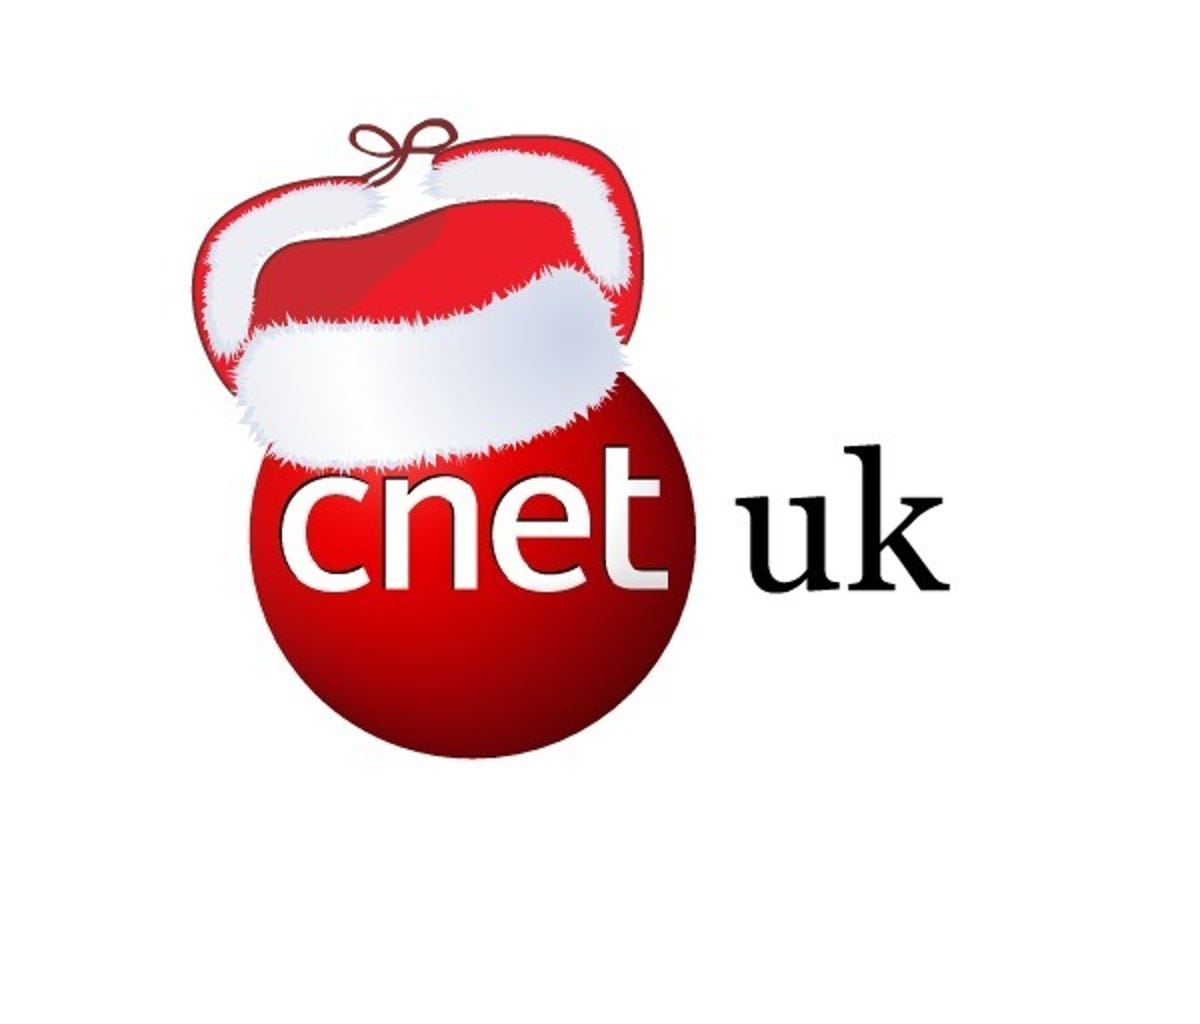 cnetuk-logo-hat2.jpg